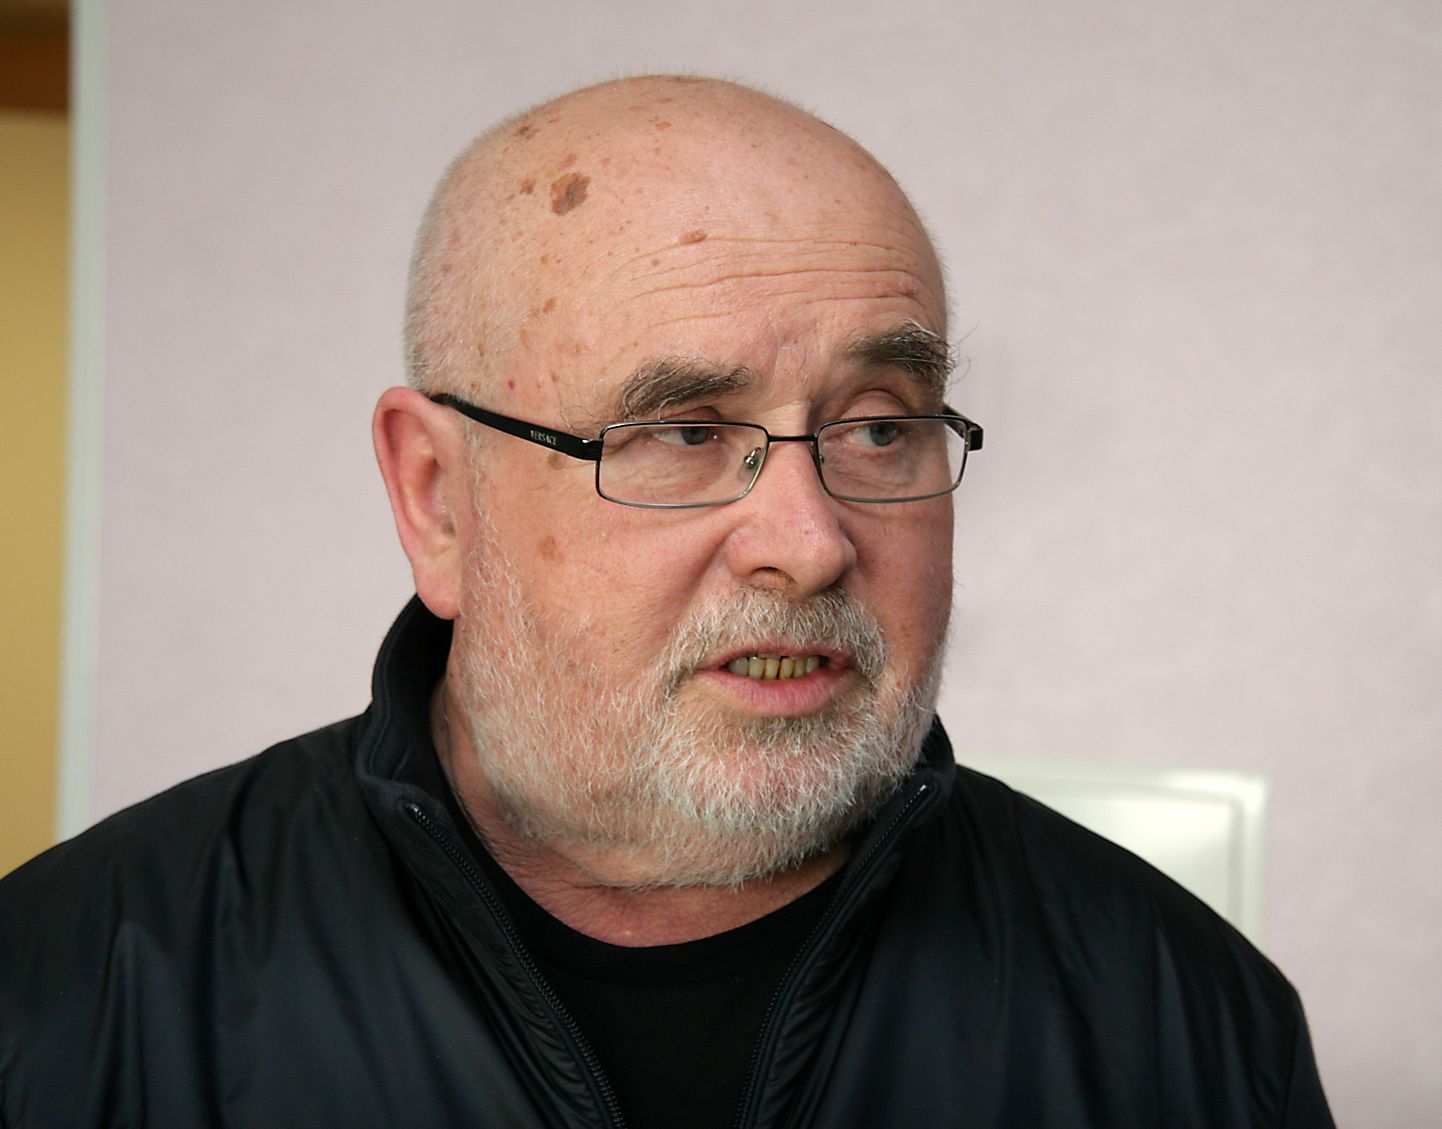 Руководитель центра помощи наркозависимым "Аллиум" Вячеслав Акимов.